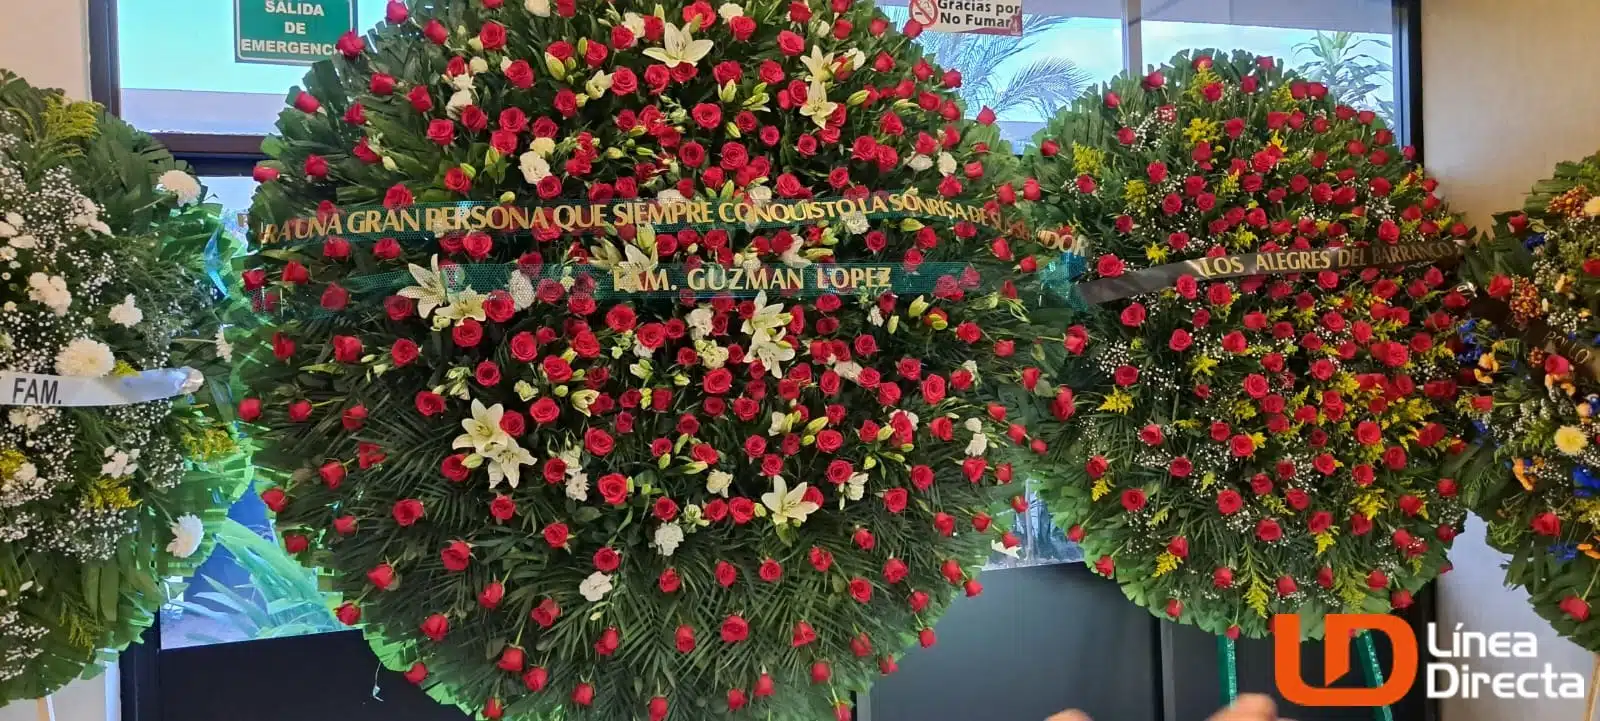 Hijos de “El Chapo” Guzmán envían una corona al funeral de “La Gilbertona” en Culiacán.